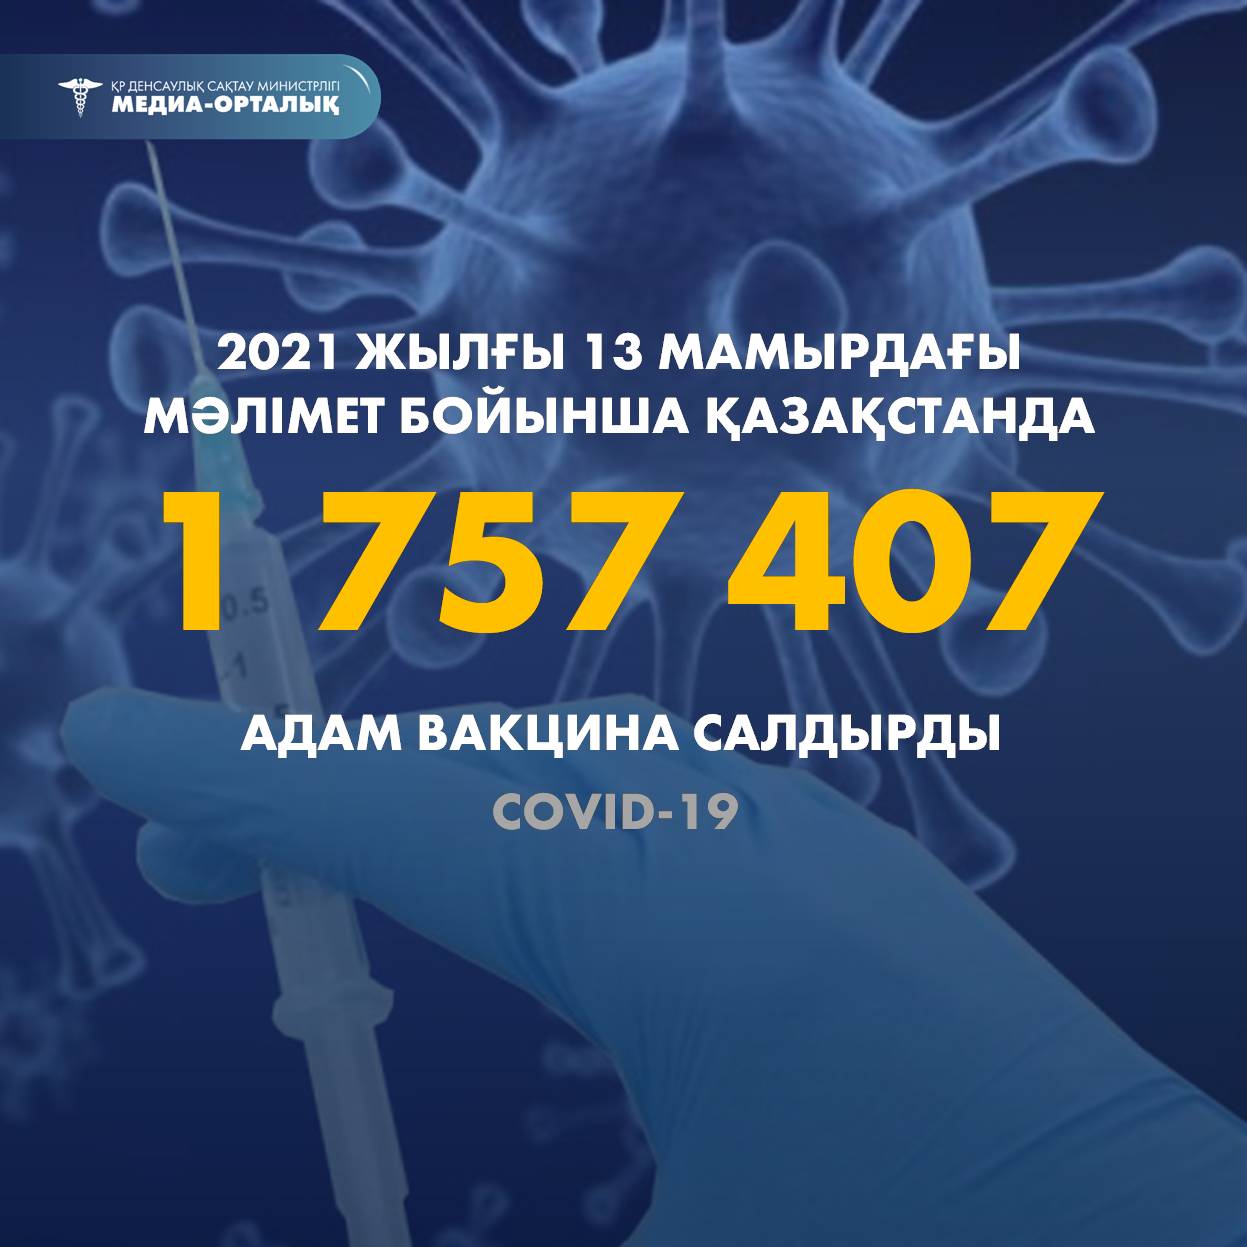 2021 жылғы 13 мамырдағы мәлімет бойынша Қазақстанда 1 747 407 адам вакцина салдырды